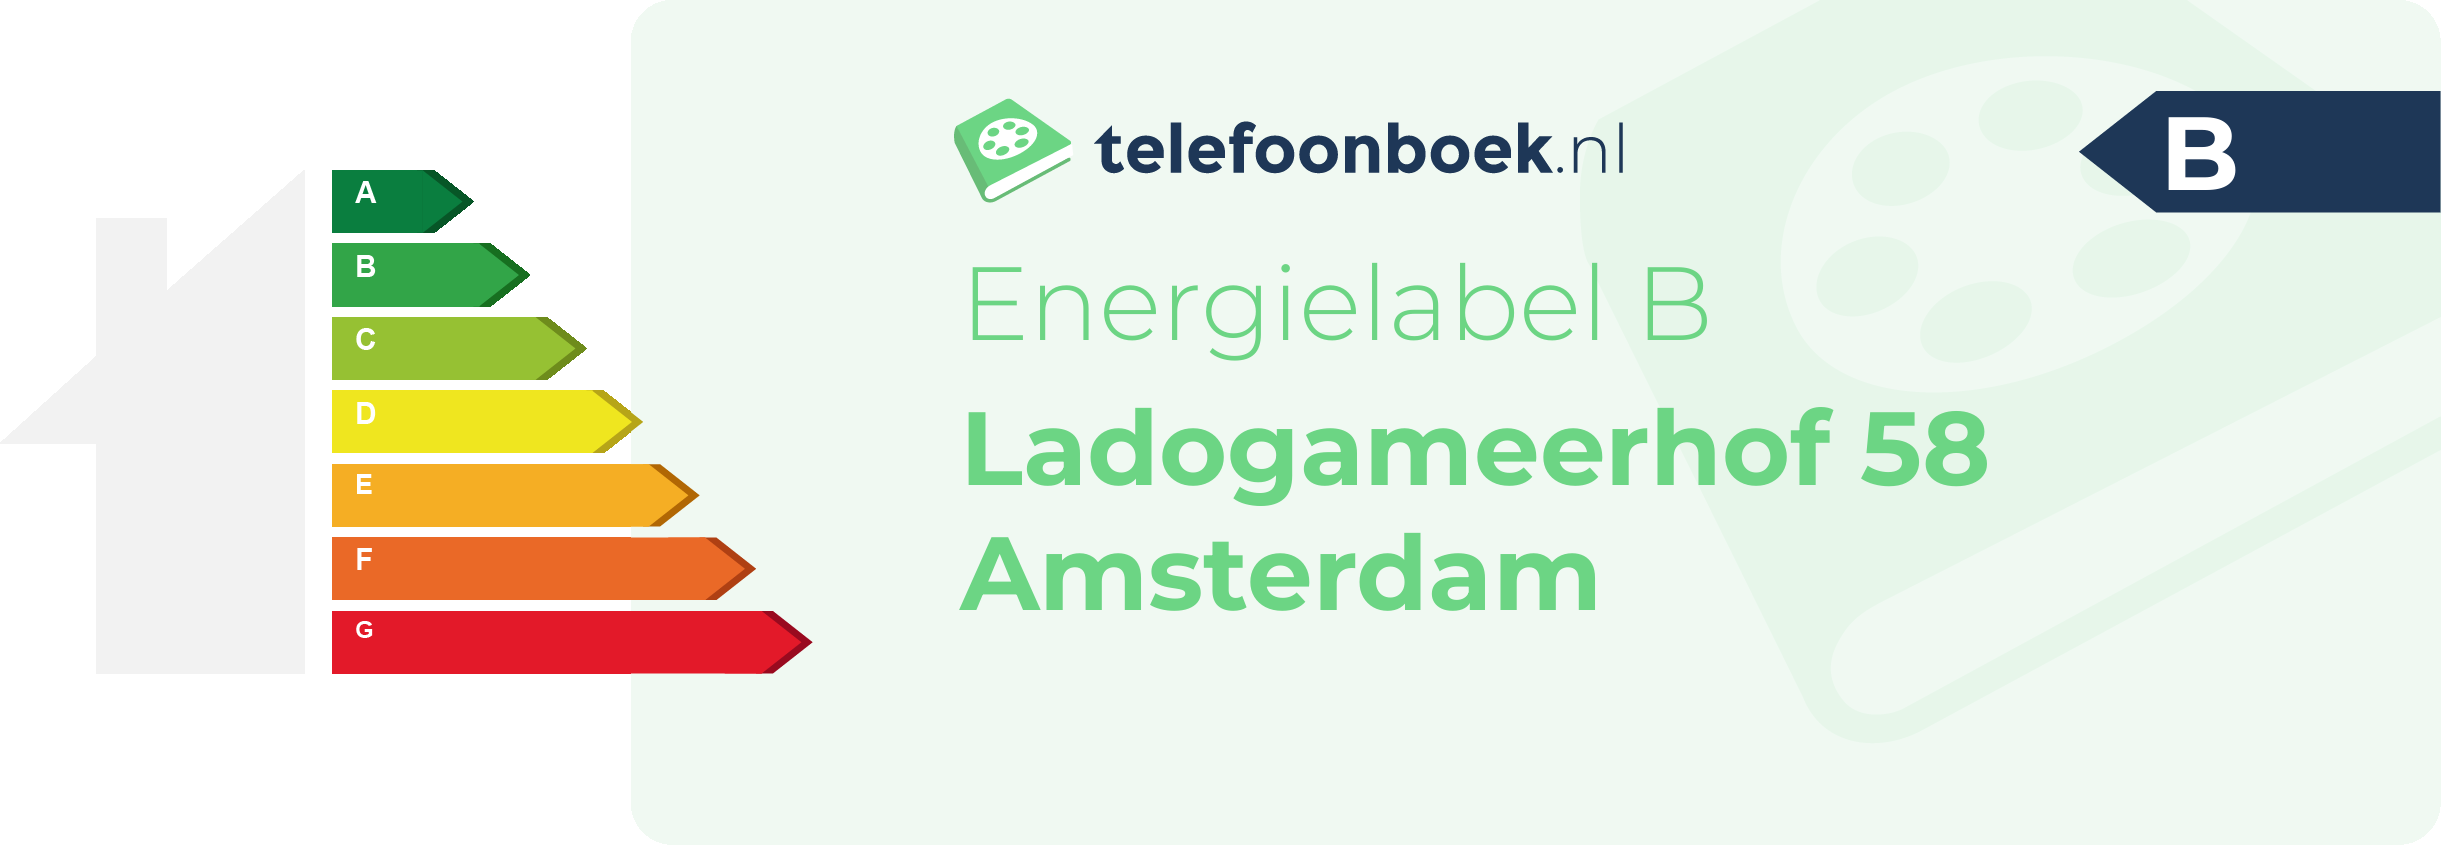 Energielabel Ladogameerhof 58 Amsterdam